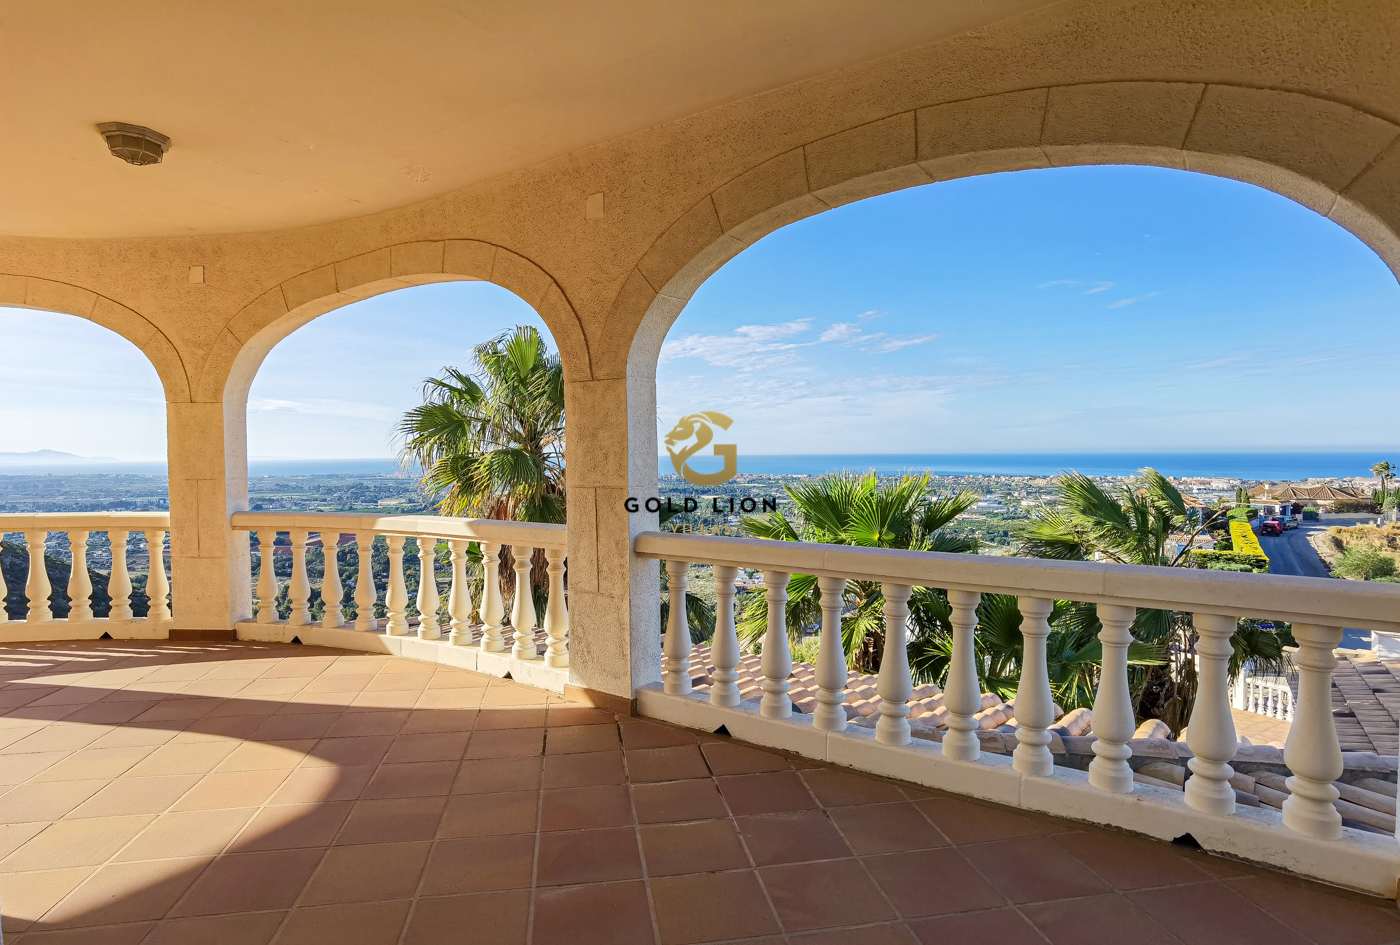 Exclusiva villa a la venta con impresionantes vistas panorámicas al mar y a la localidad de Dénia